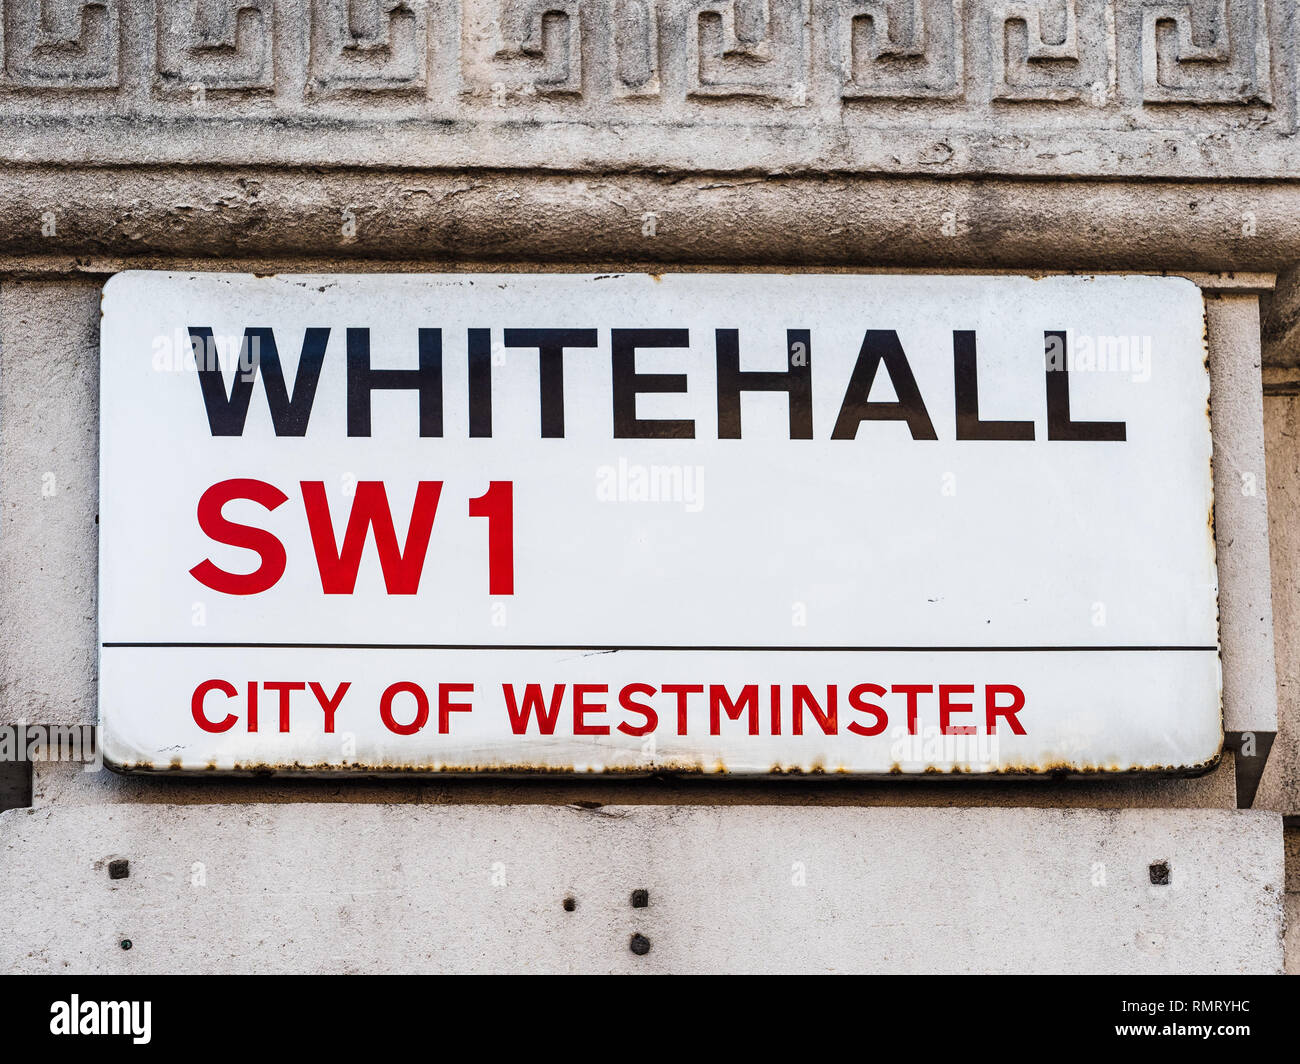 Whitehall Street London SW1 - Whitehall befindet sich im Herzen der Stadt von Westminster Regierungsviertel in London Stockfoto